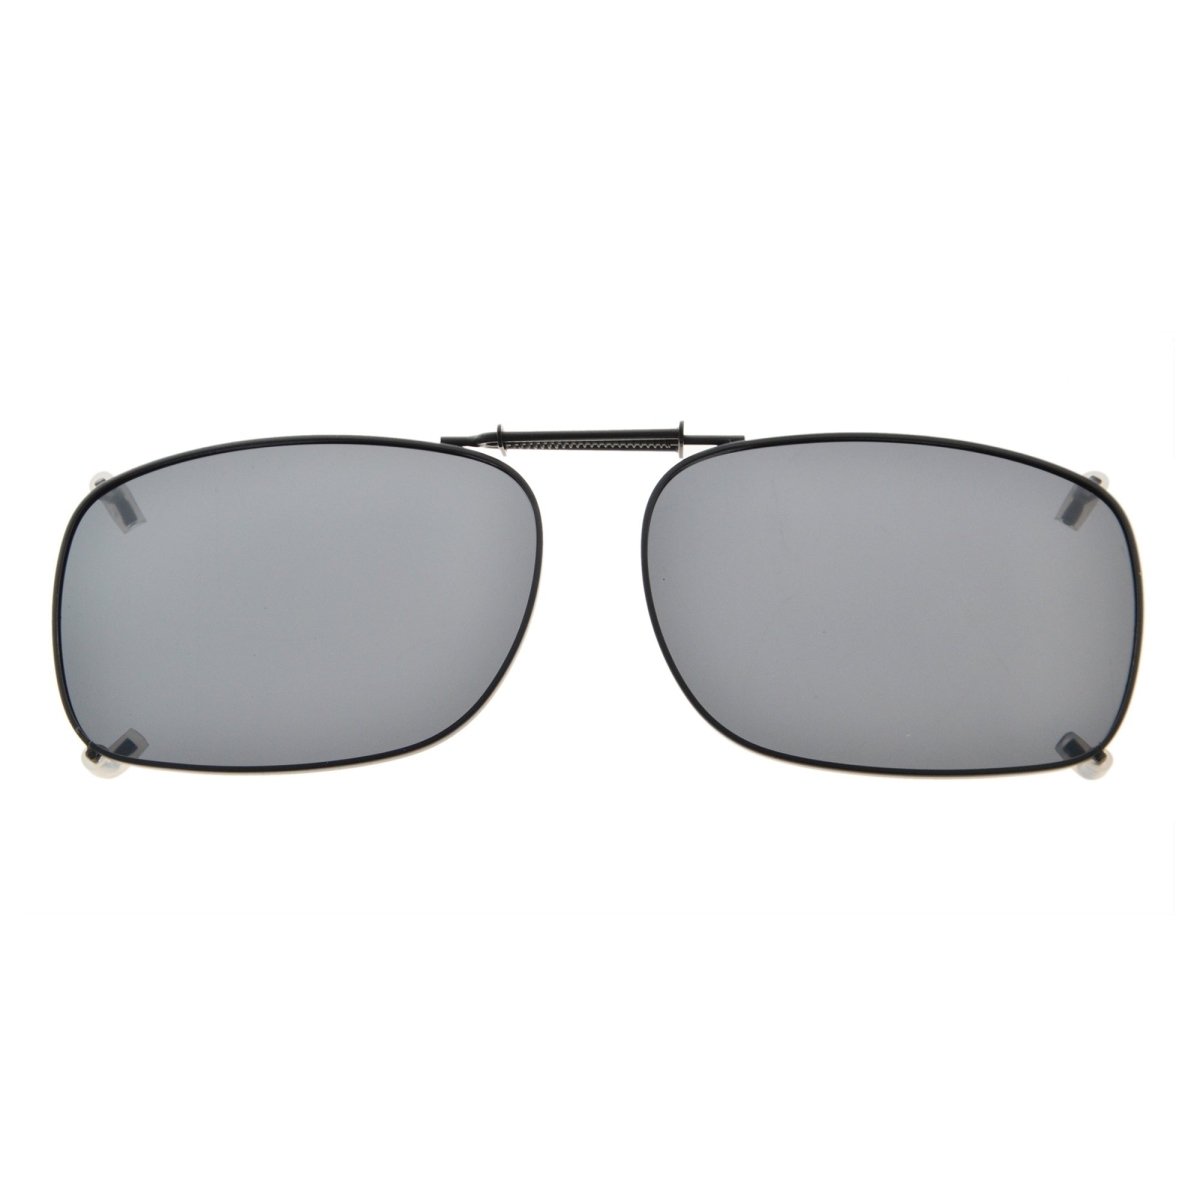 CLIP-ON (Clip Sonnenbrille für Brillenträger / Polarized) - Lädelishop